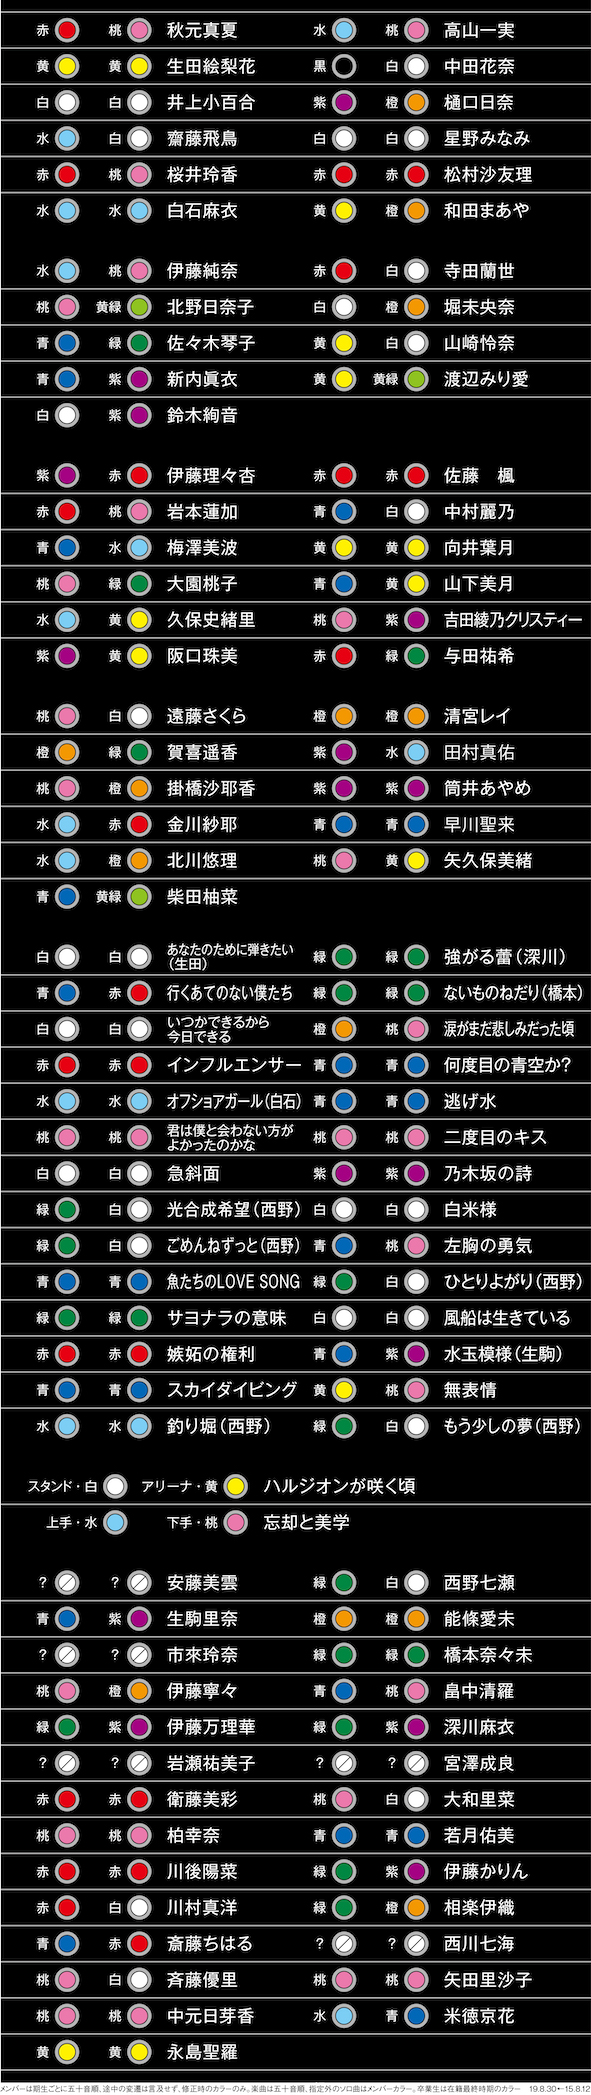 乃木坂46 メンバー別サイリウム色組み合わせ